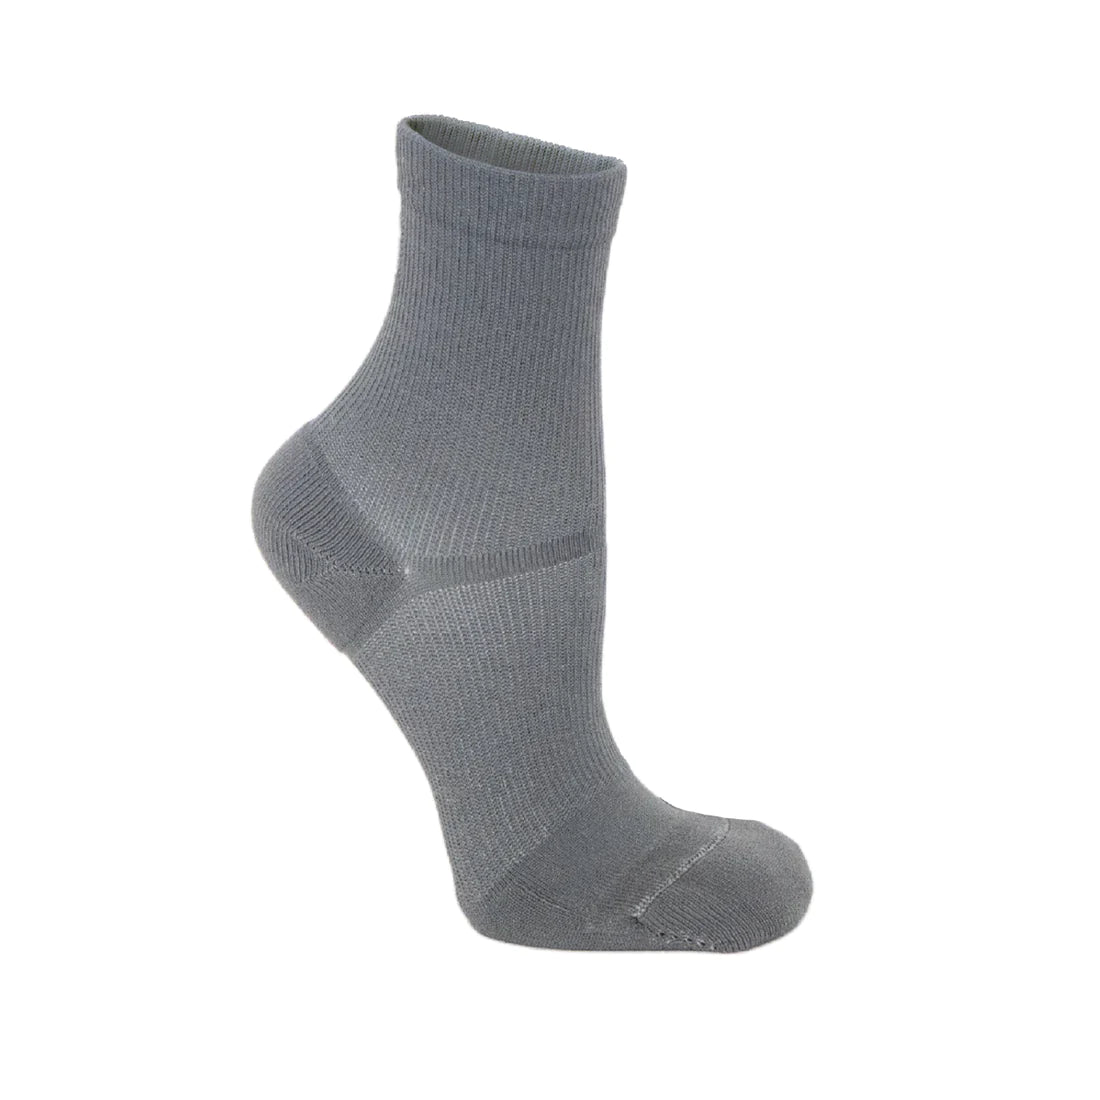 Non traction apolla compression grey sock